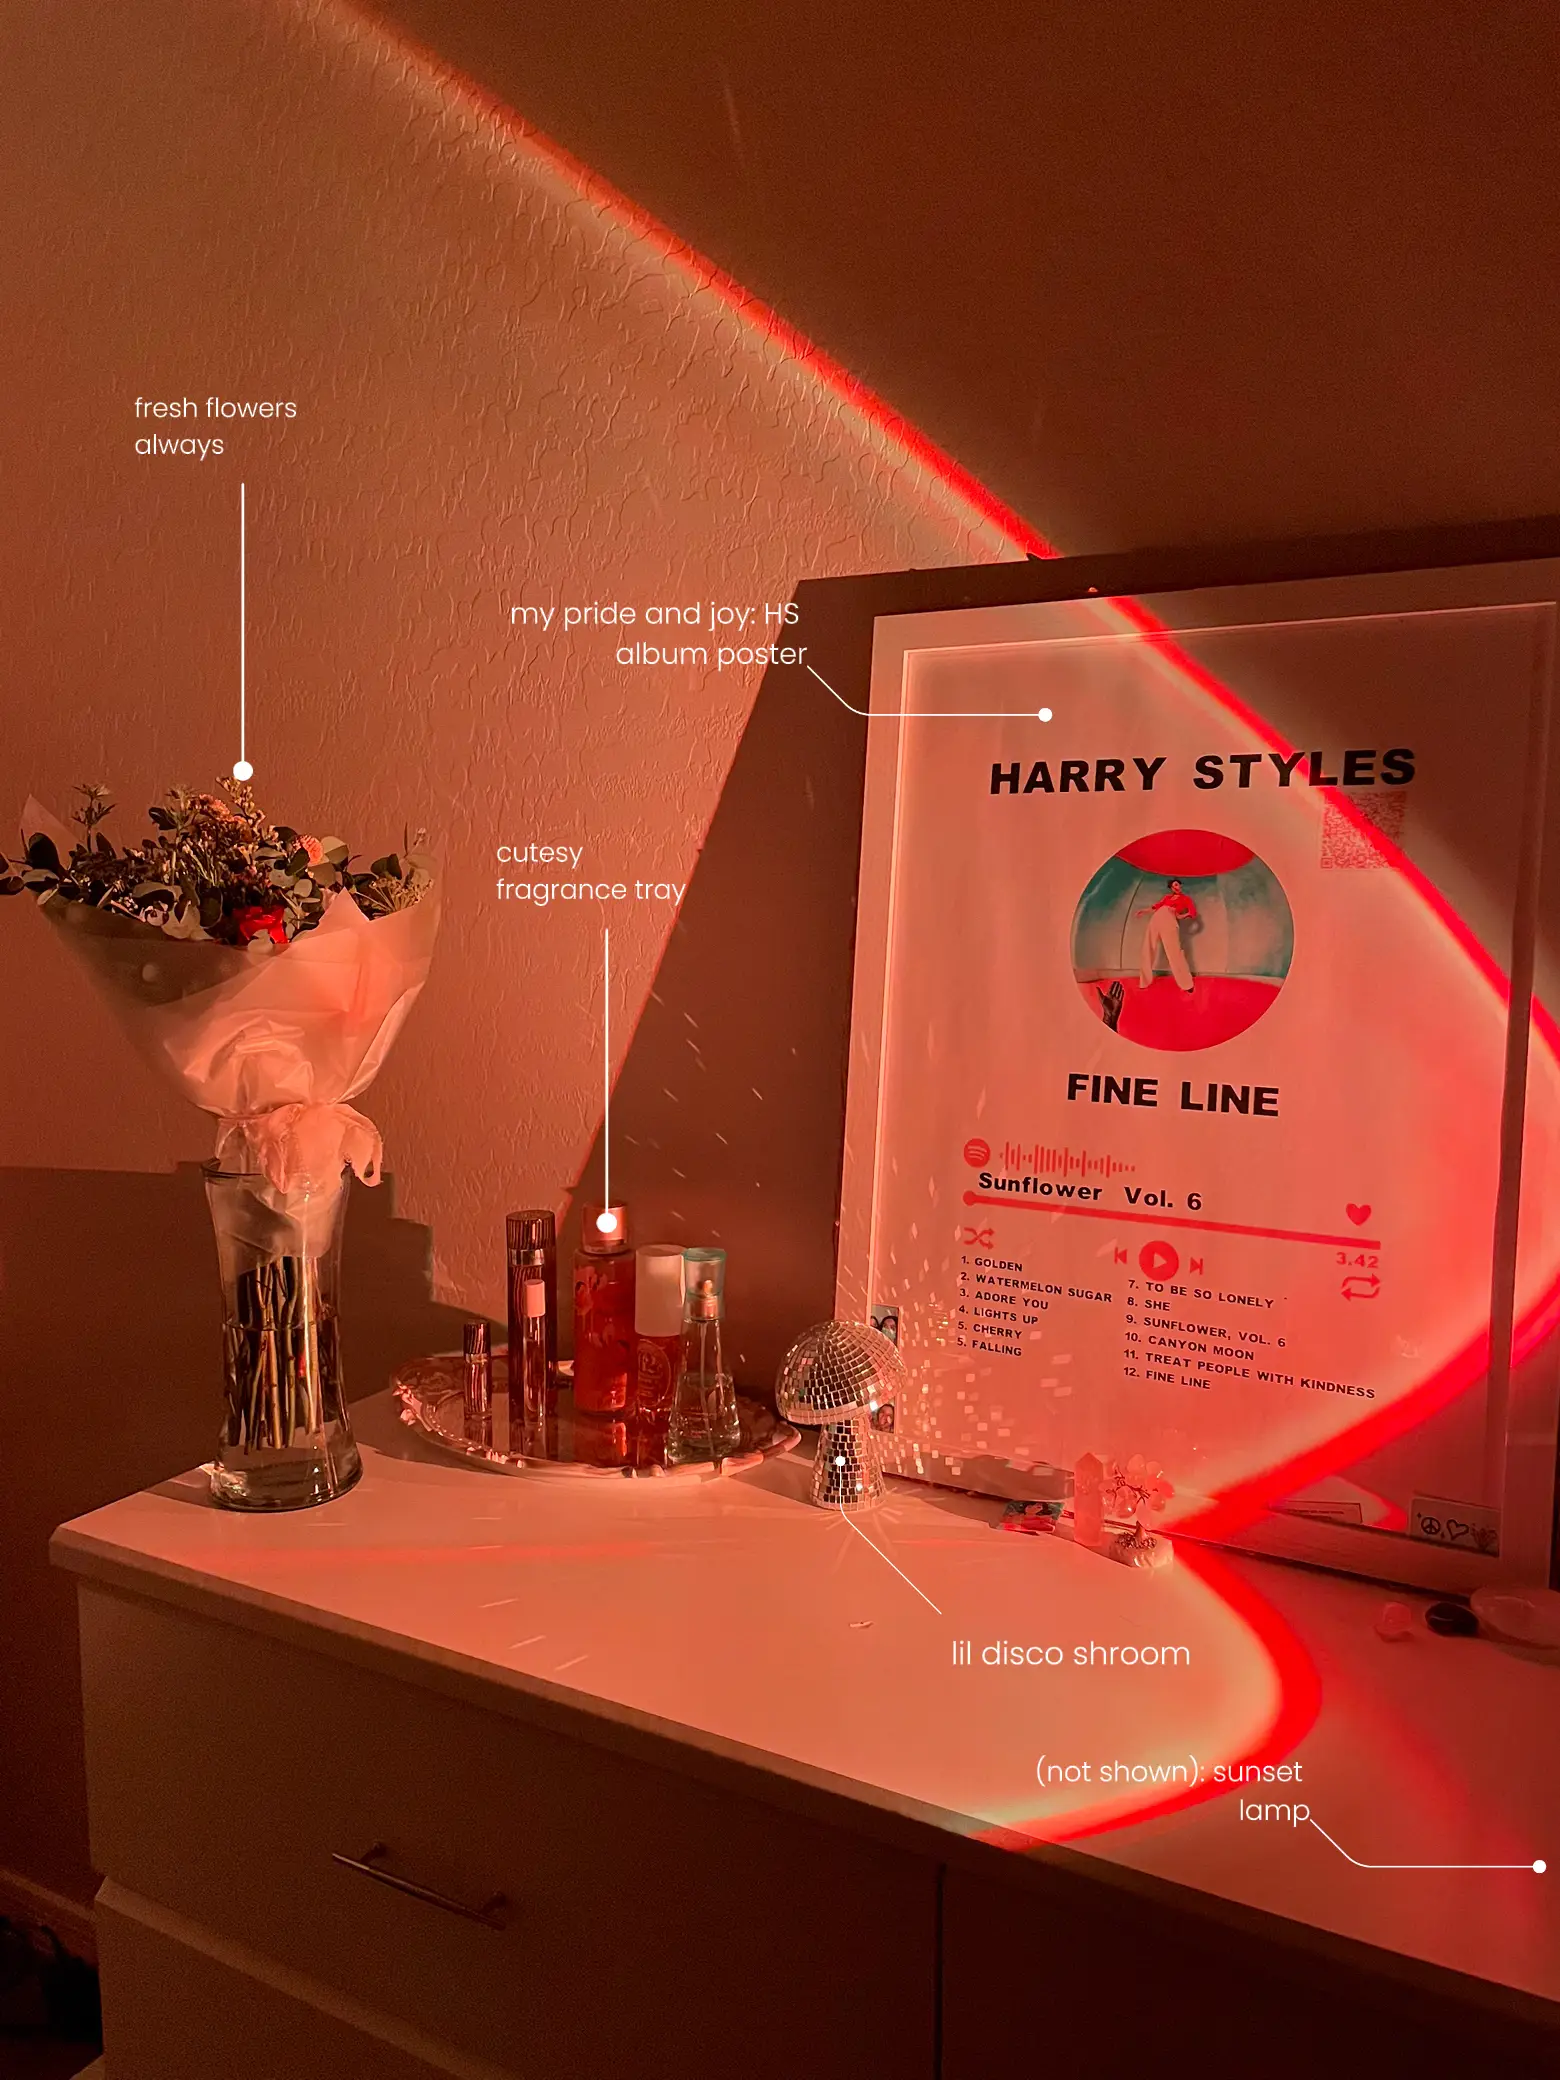 Harry styles bedroom - Lemon8 Search